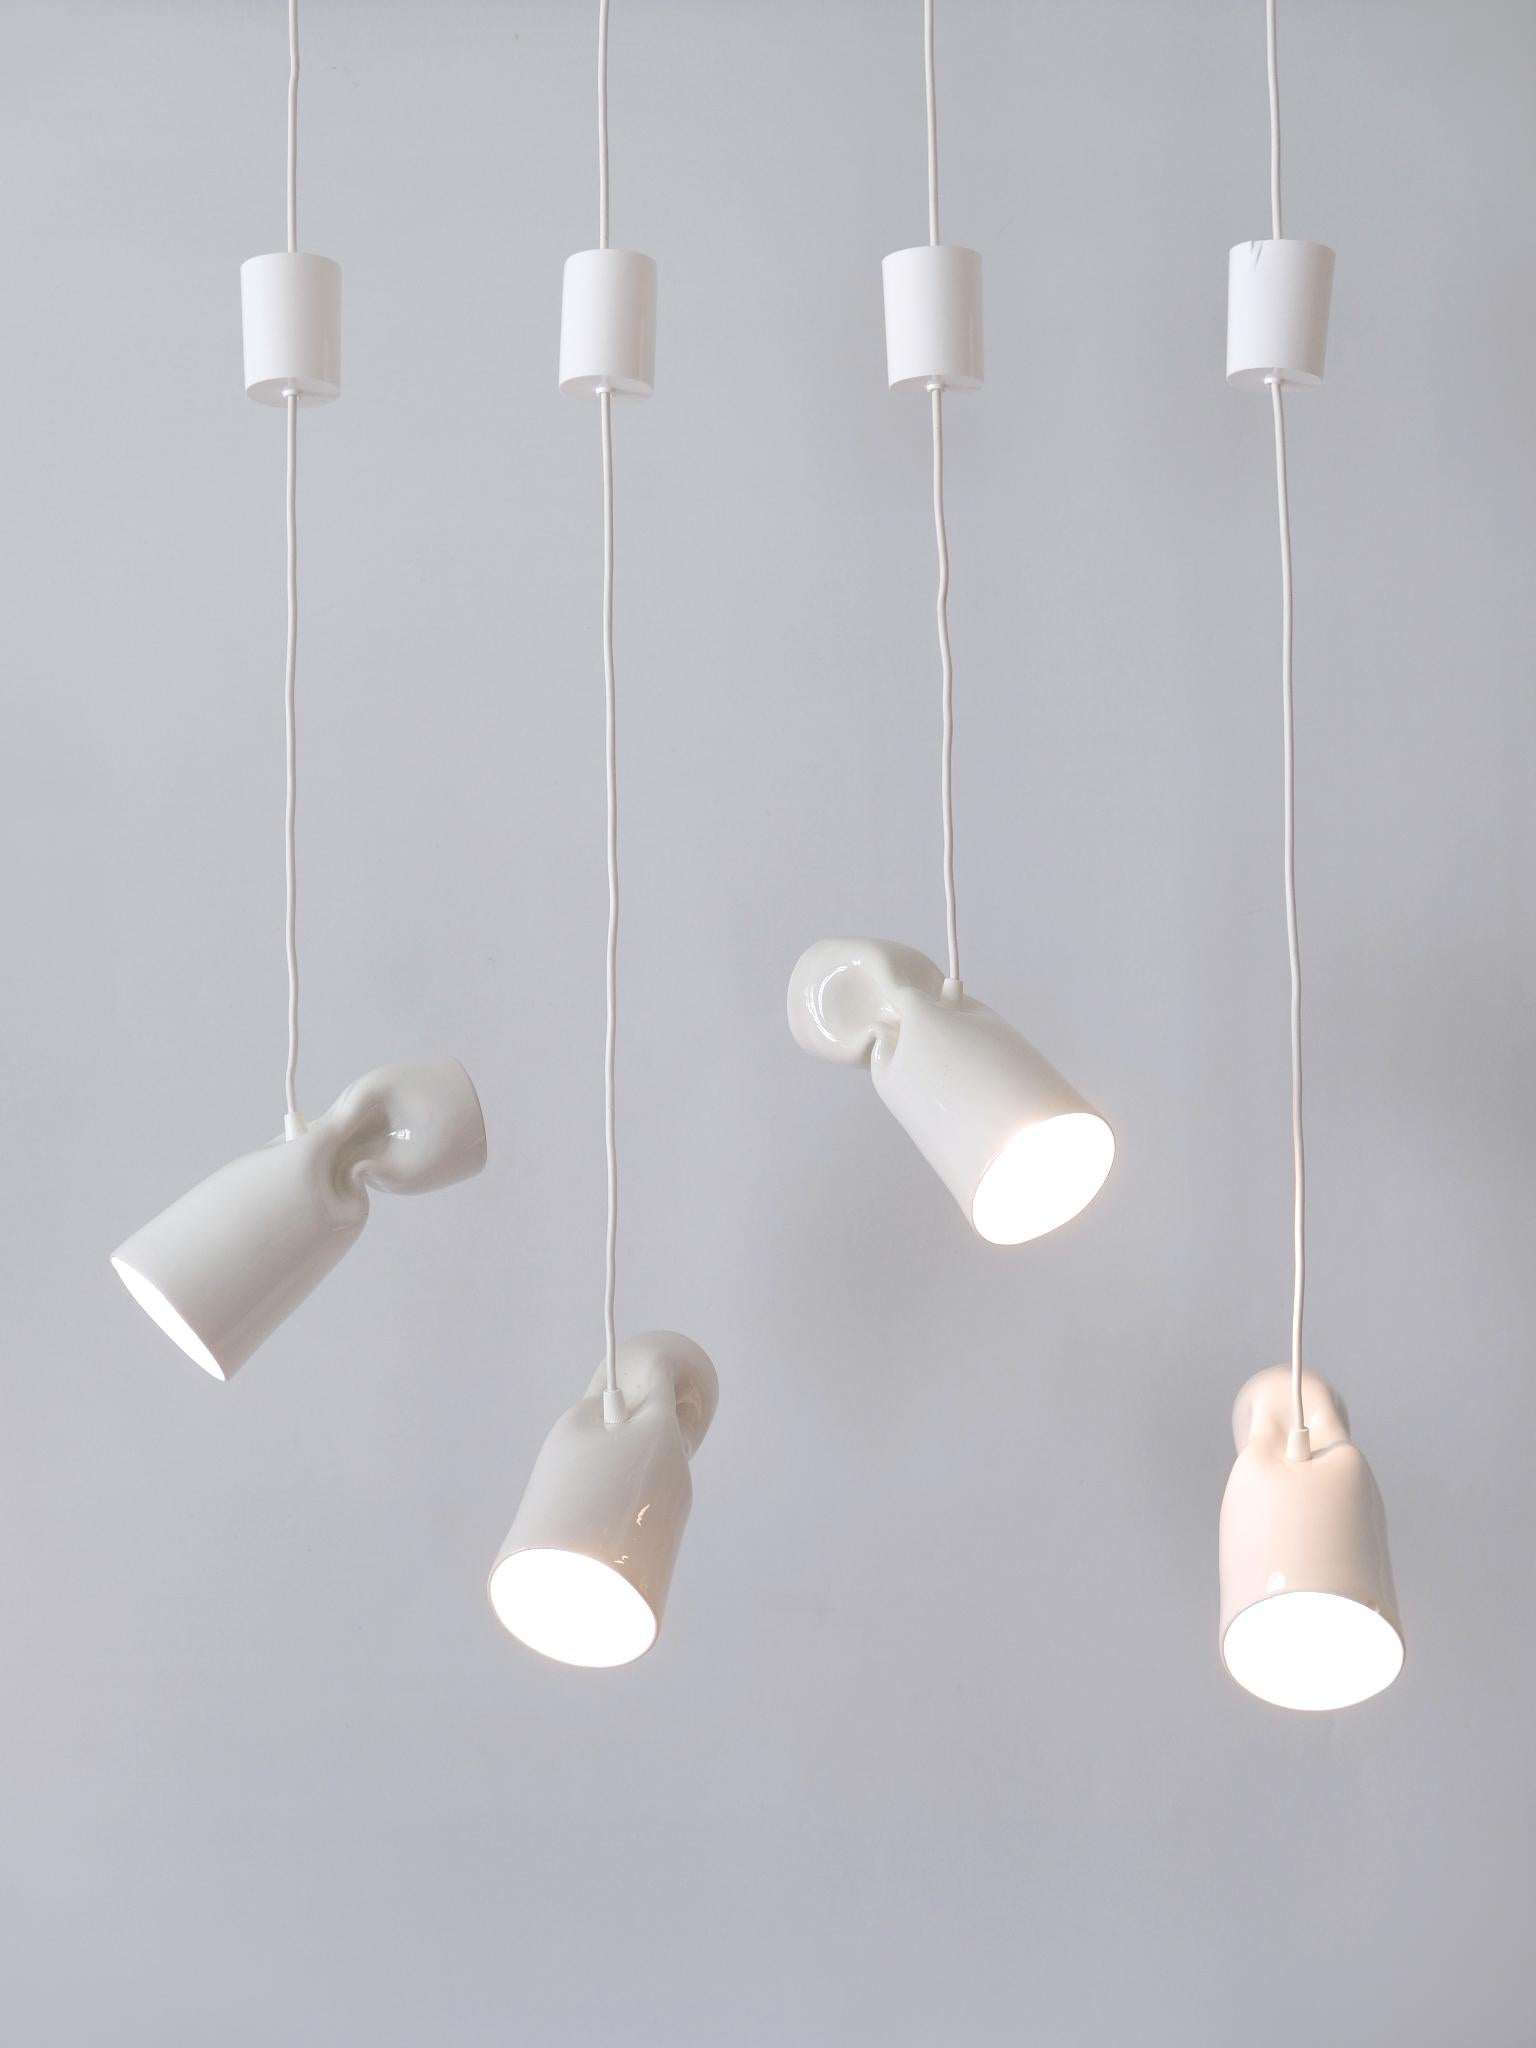 Set of Four Strangled Light Pendant Lamps by Gitta Gschwendtner for Artificial For Sale 4